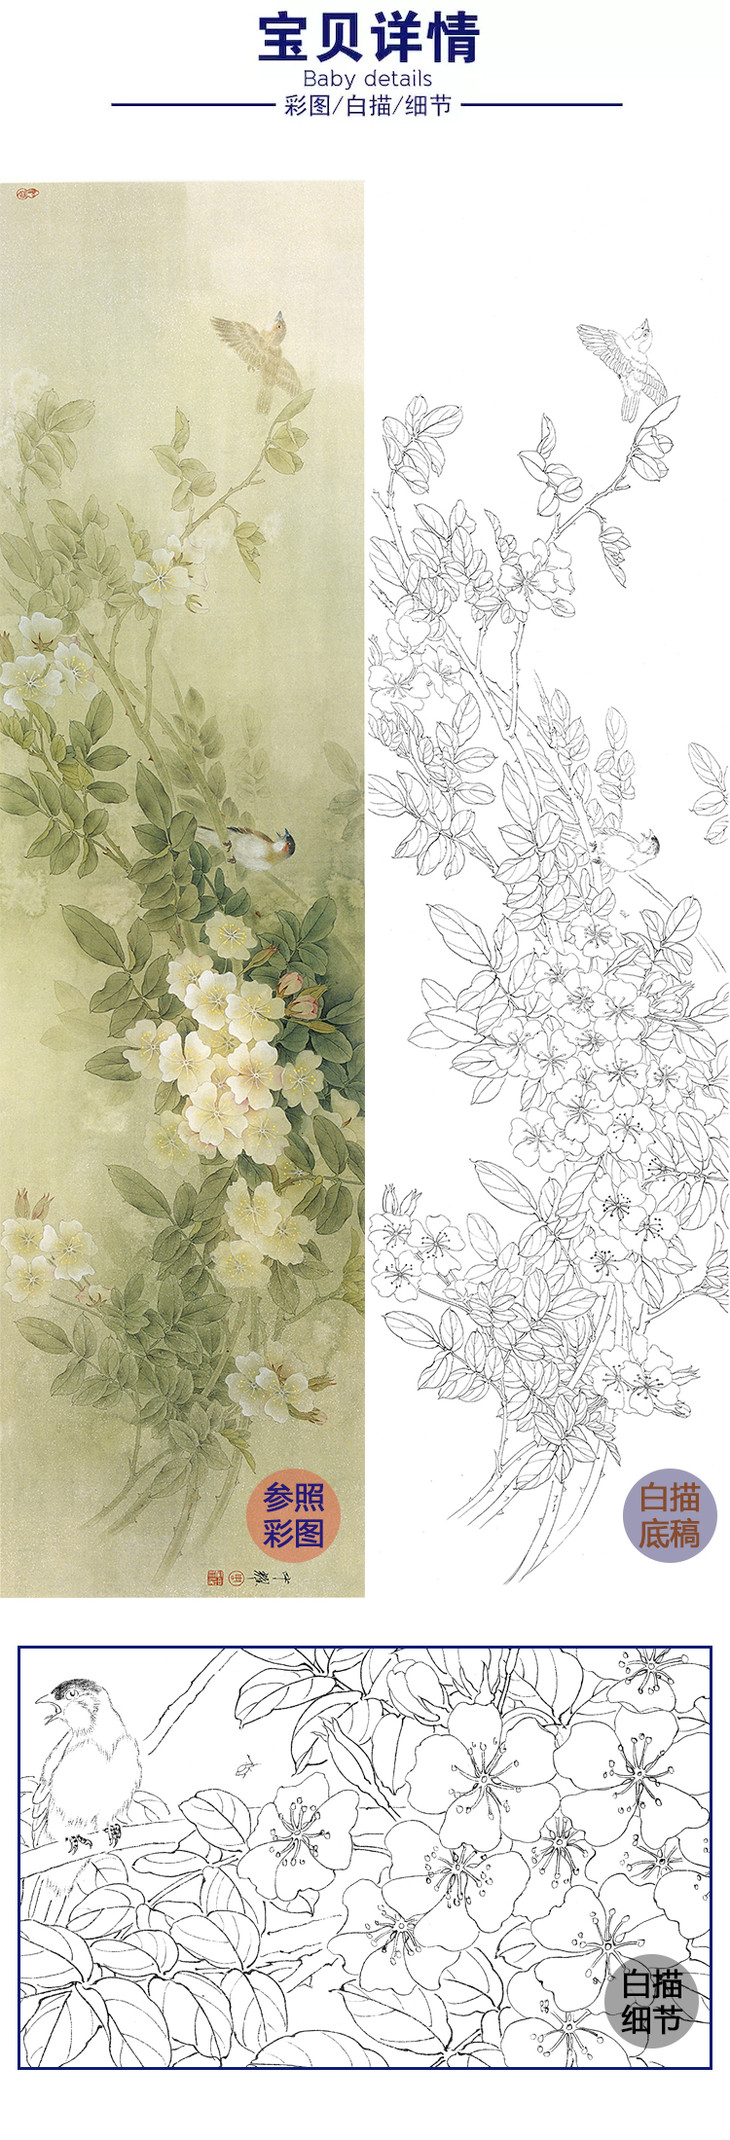 白描底稿-工笔花鸟-周中耀-菊花-《又聚蔷薇几度花》-多种白描尺寸可